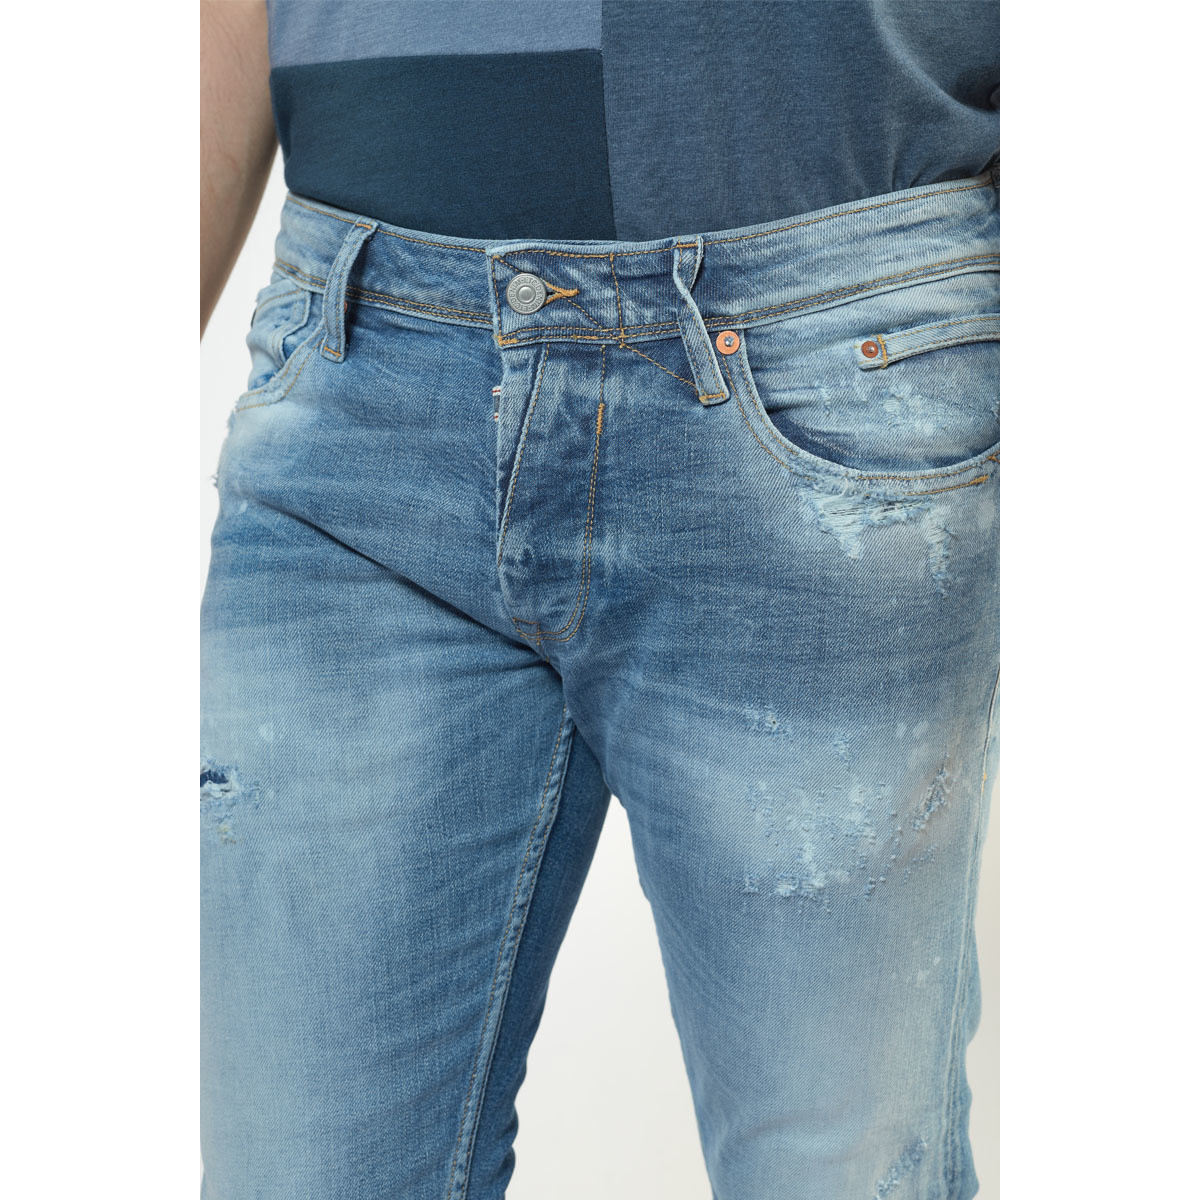 Le Temps des Cerises Bleu Bogen 700/11 adjusted jeans destroy vintage bleu HzL82fva